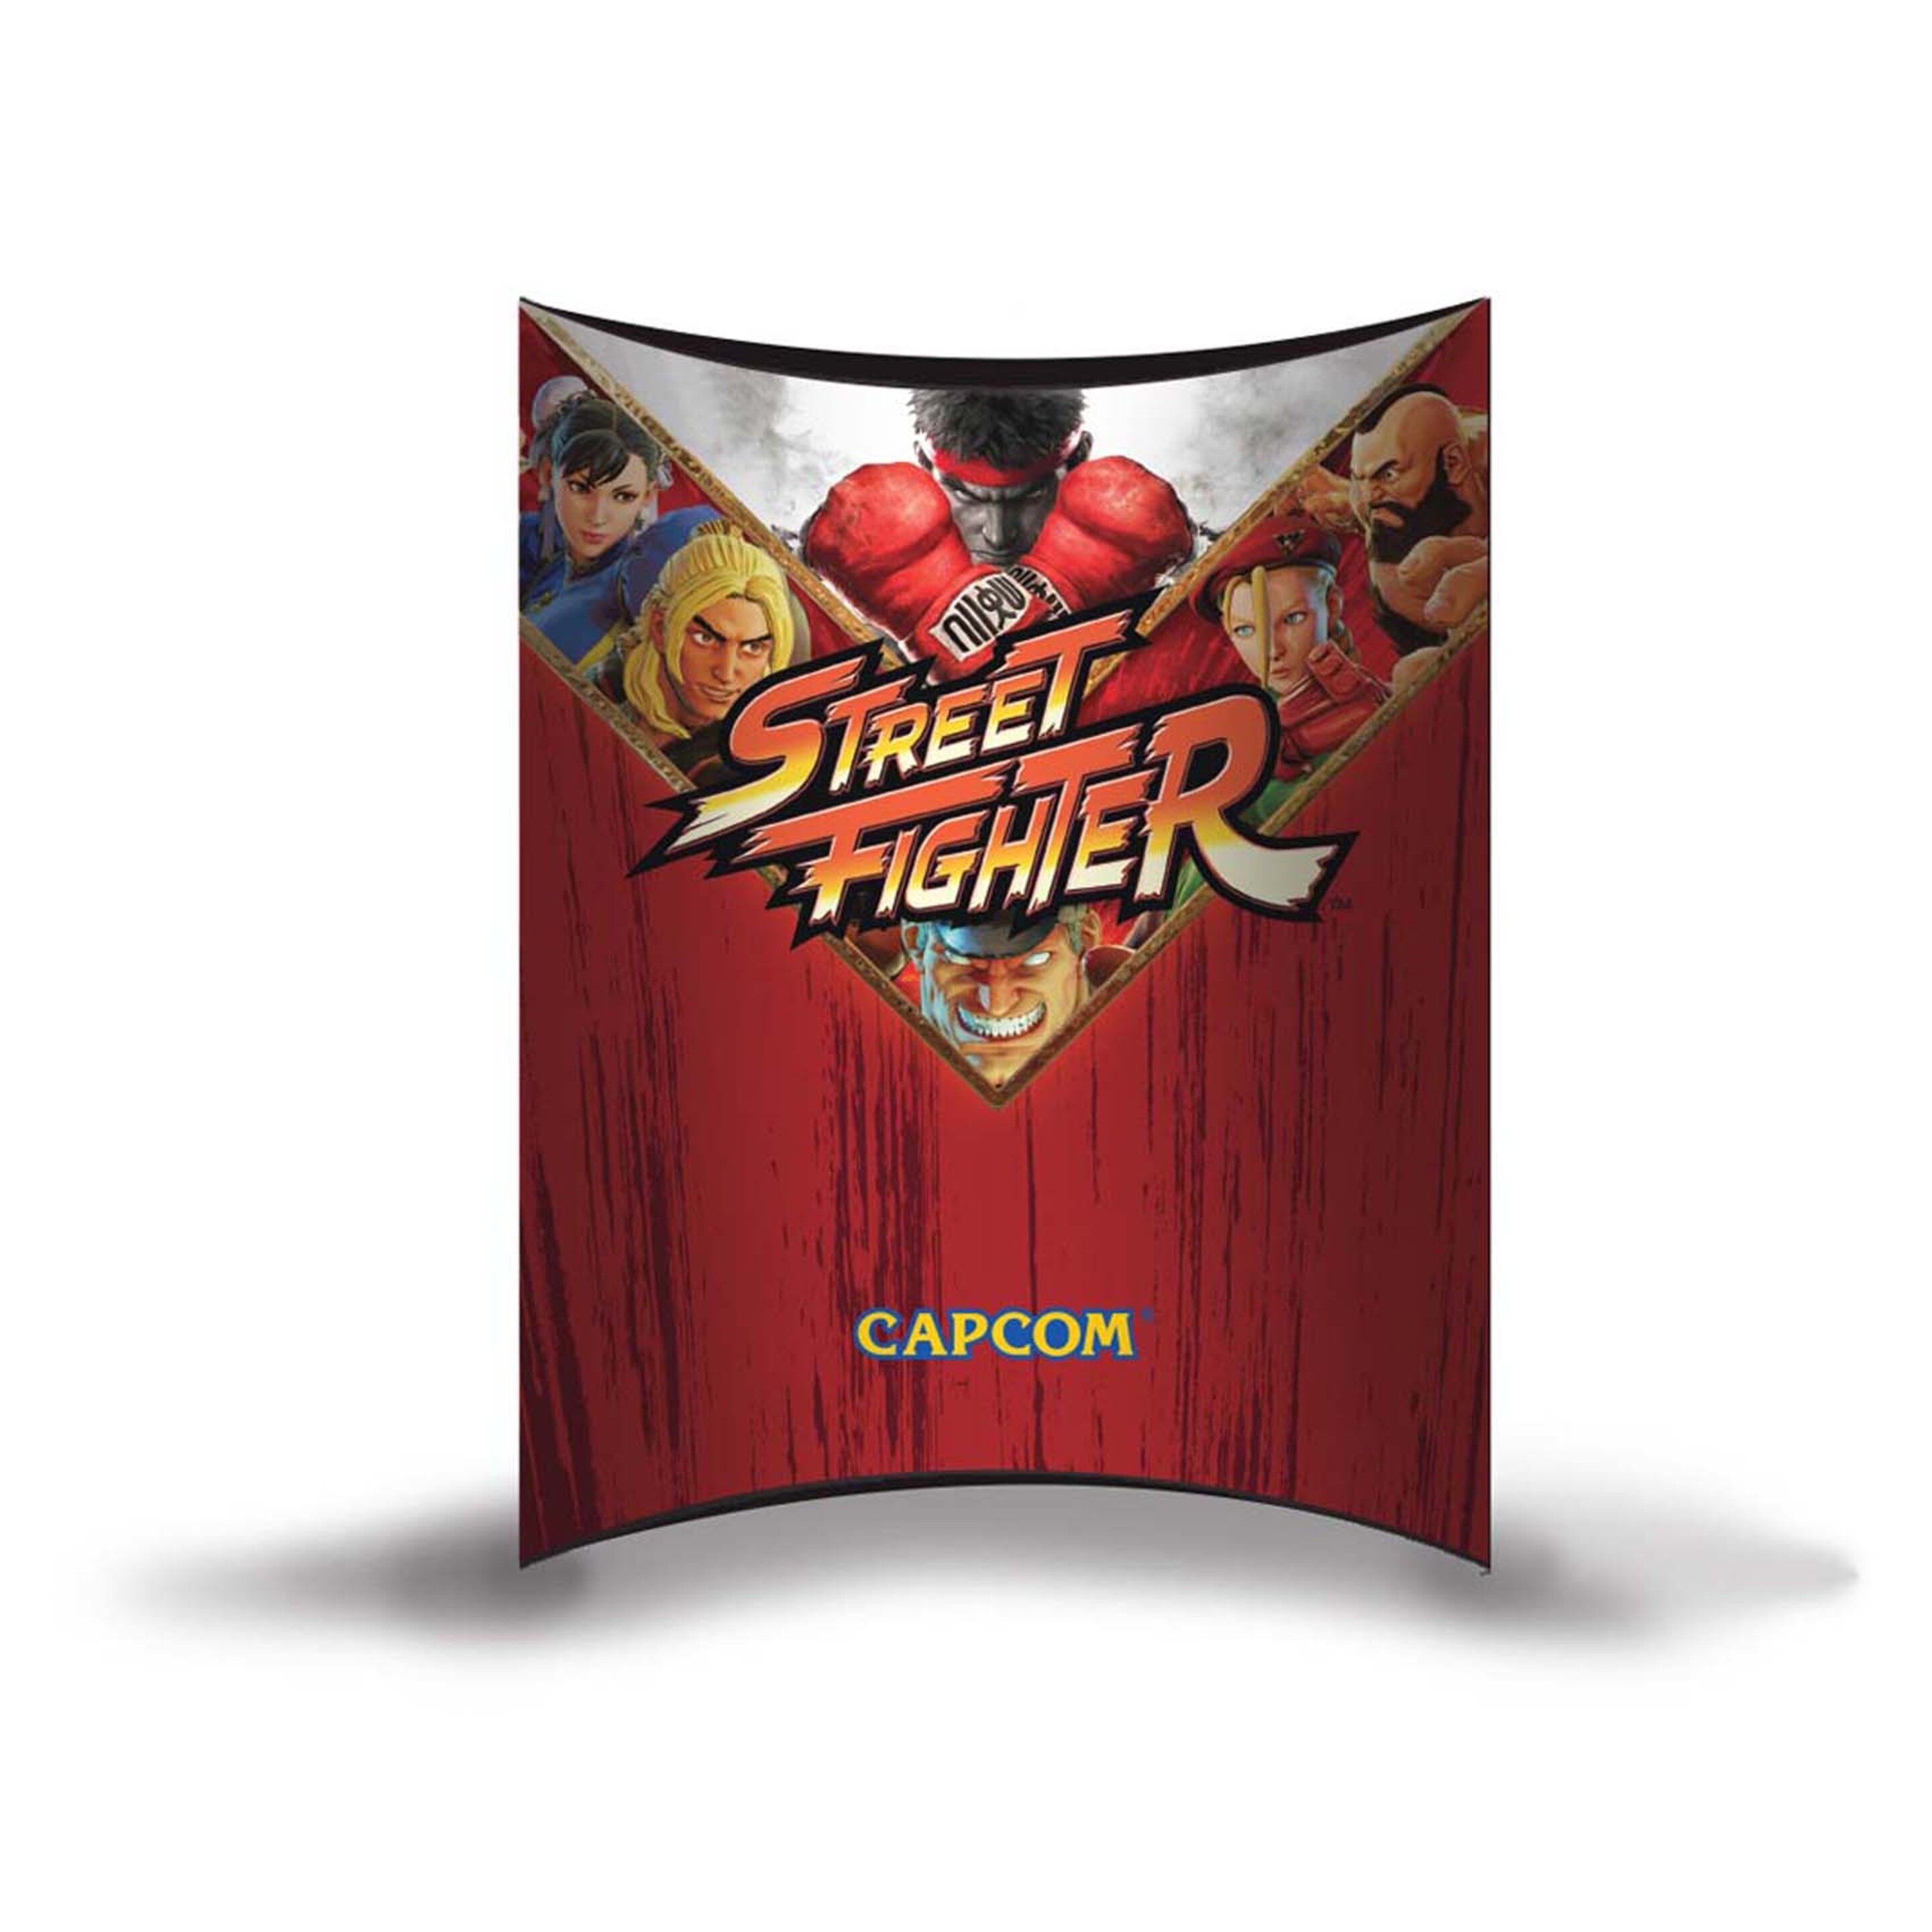 Calzoncillos Freegun Street Fighter